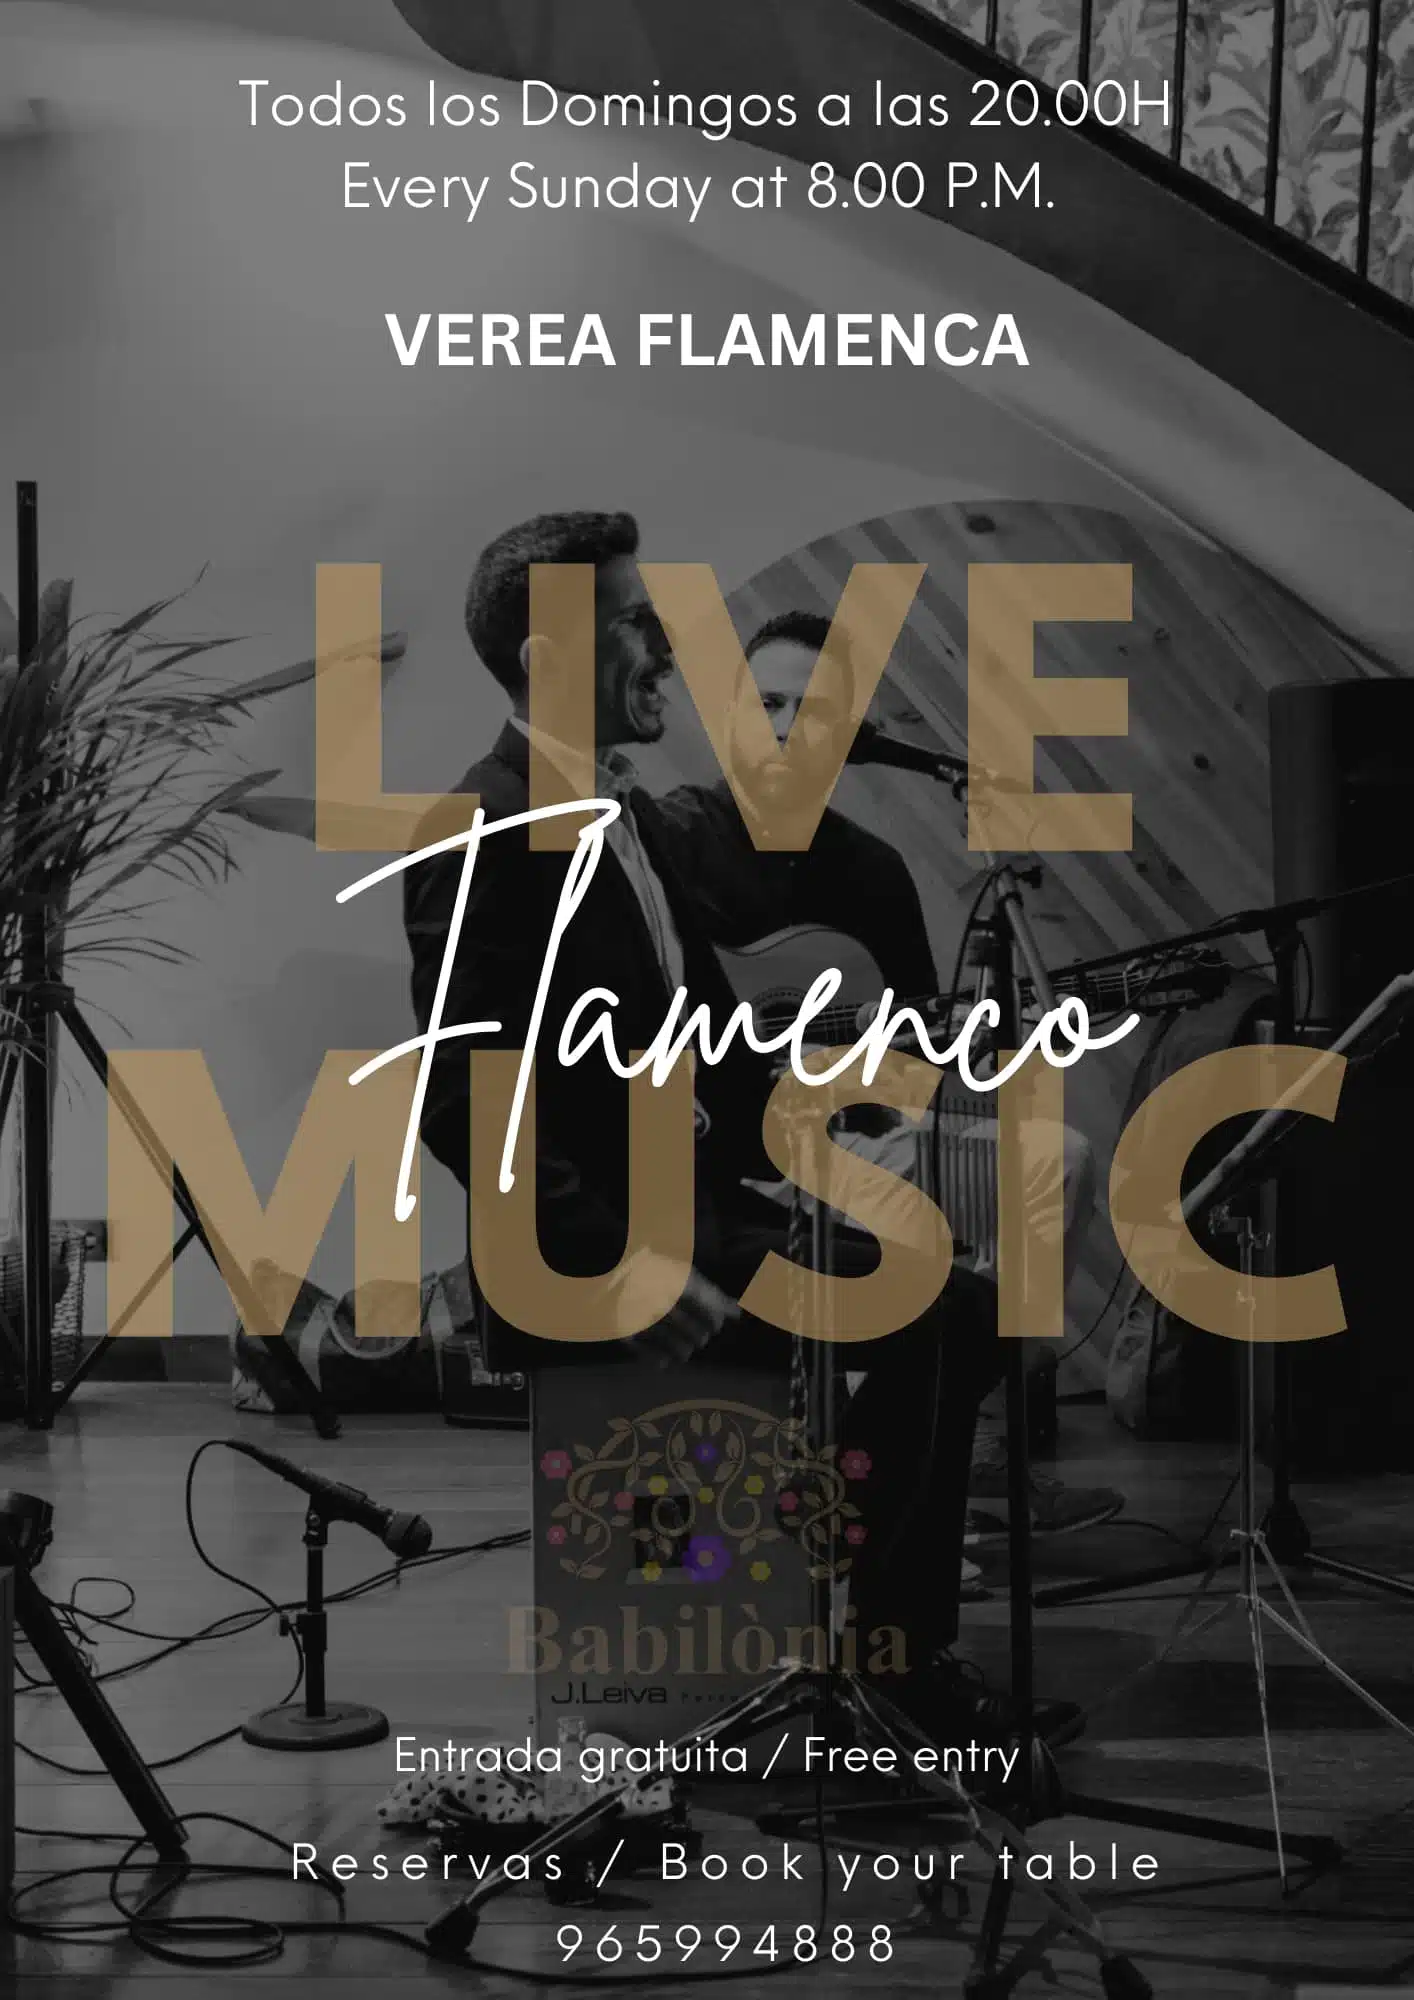 Flamenco Live music